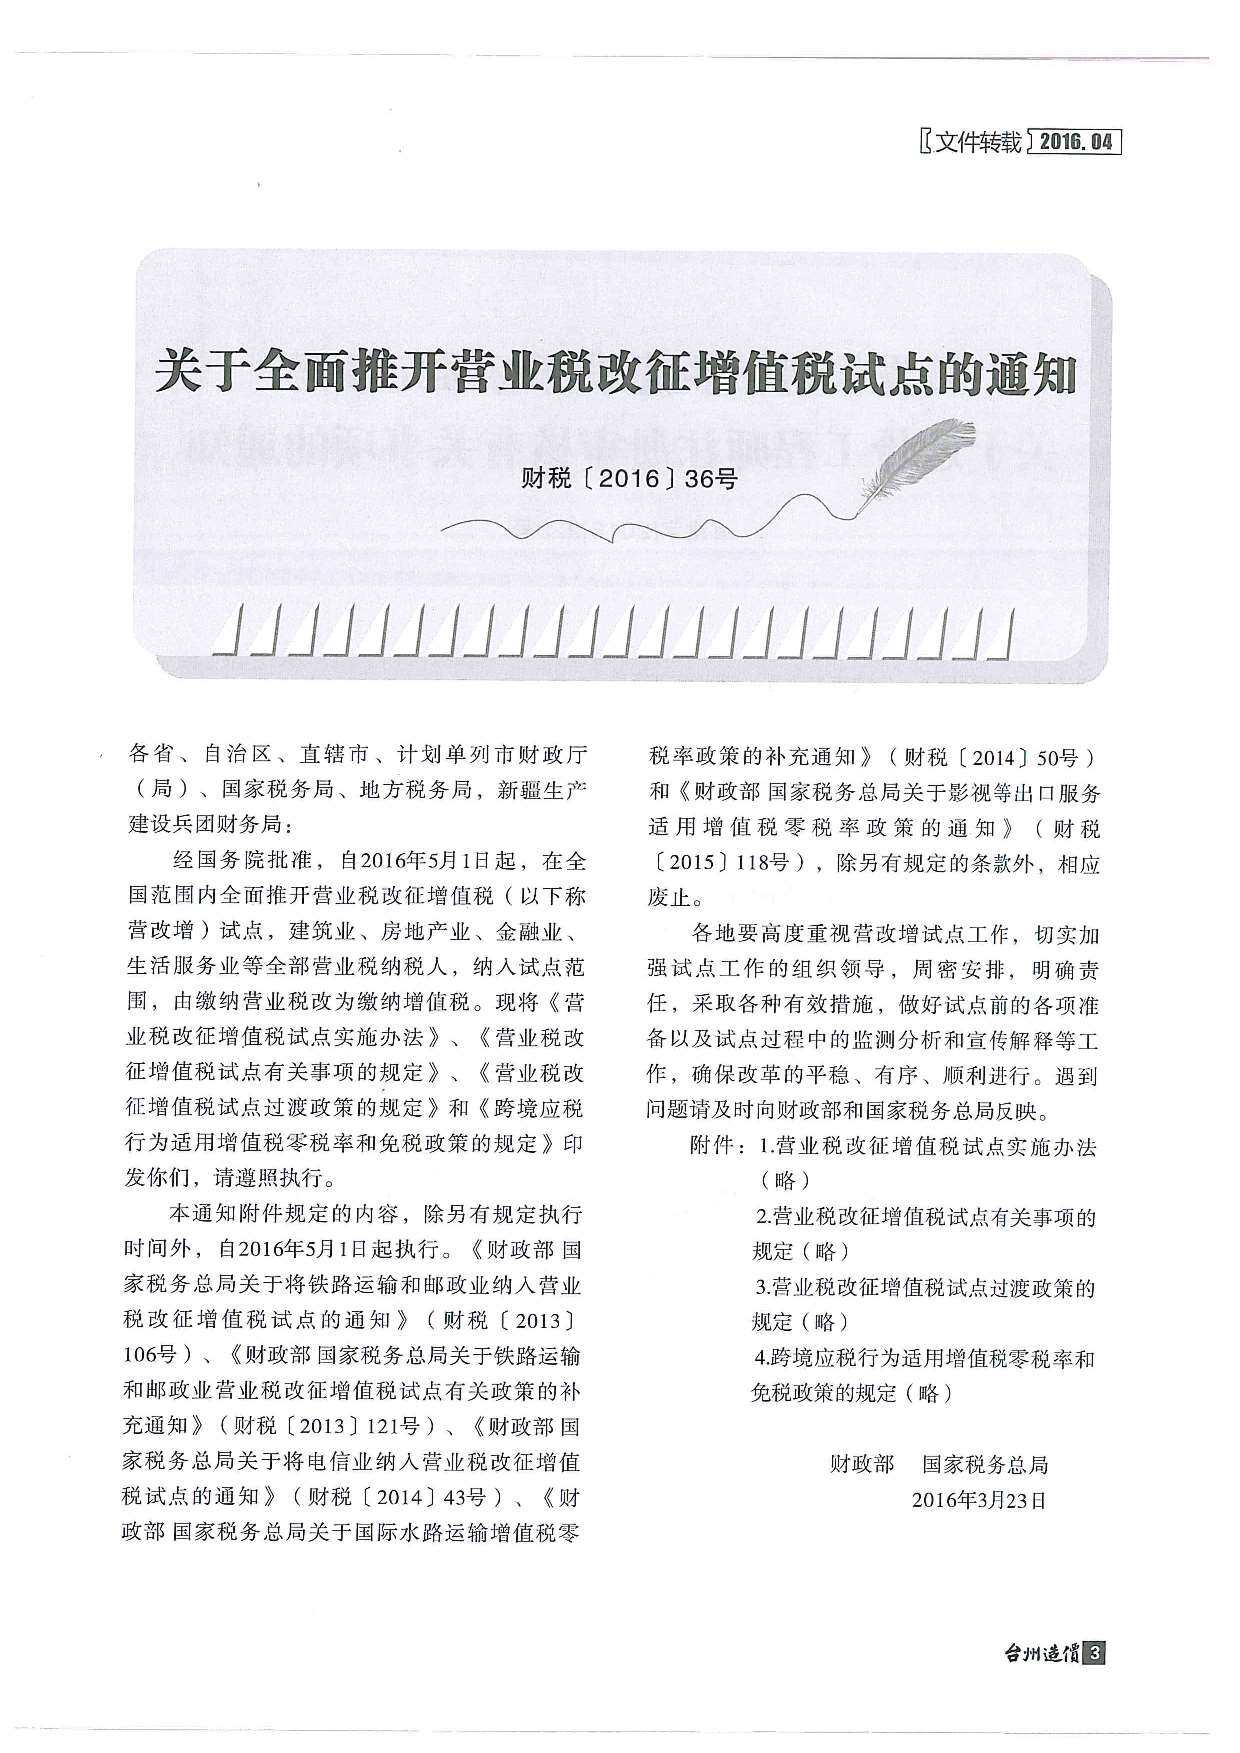 台州市2016年4月工程造价信息期刊